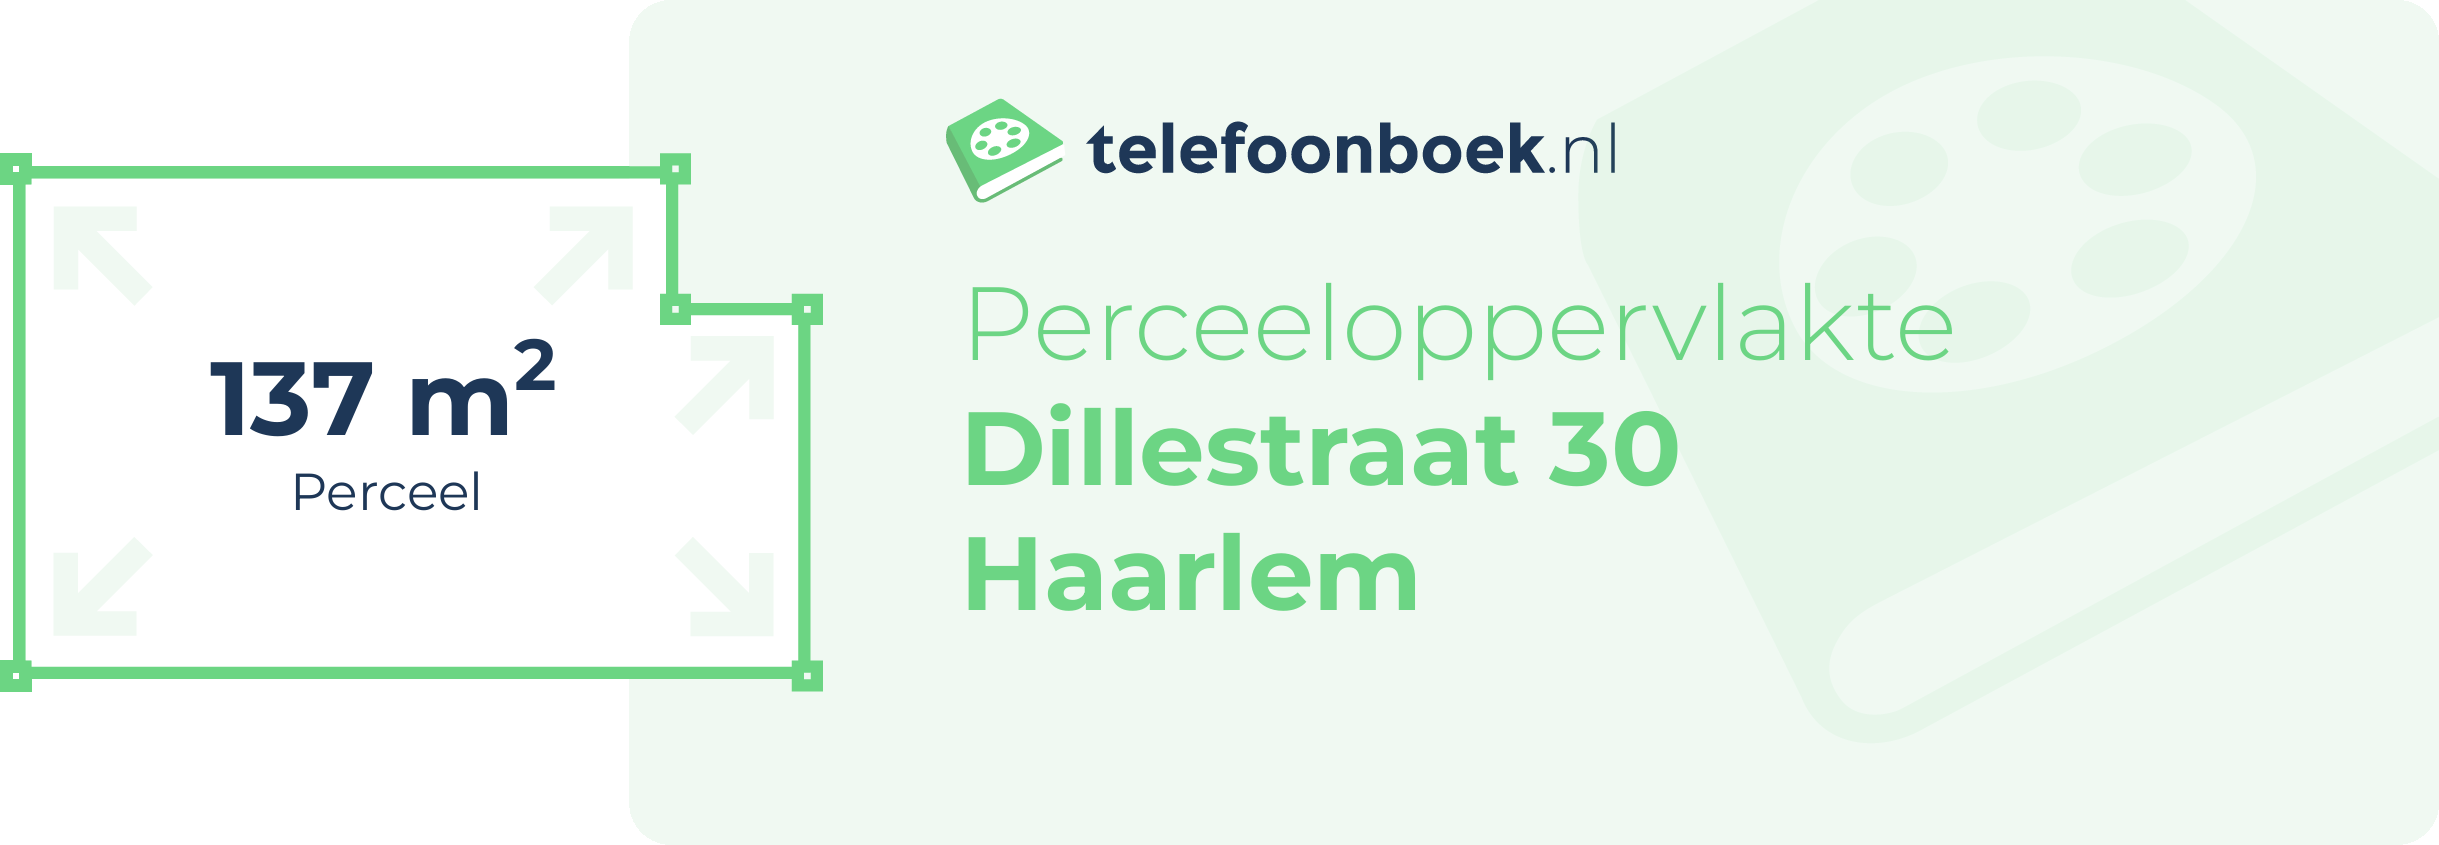 Perceeloppervlakte Dillestraat 30 Haarlem